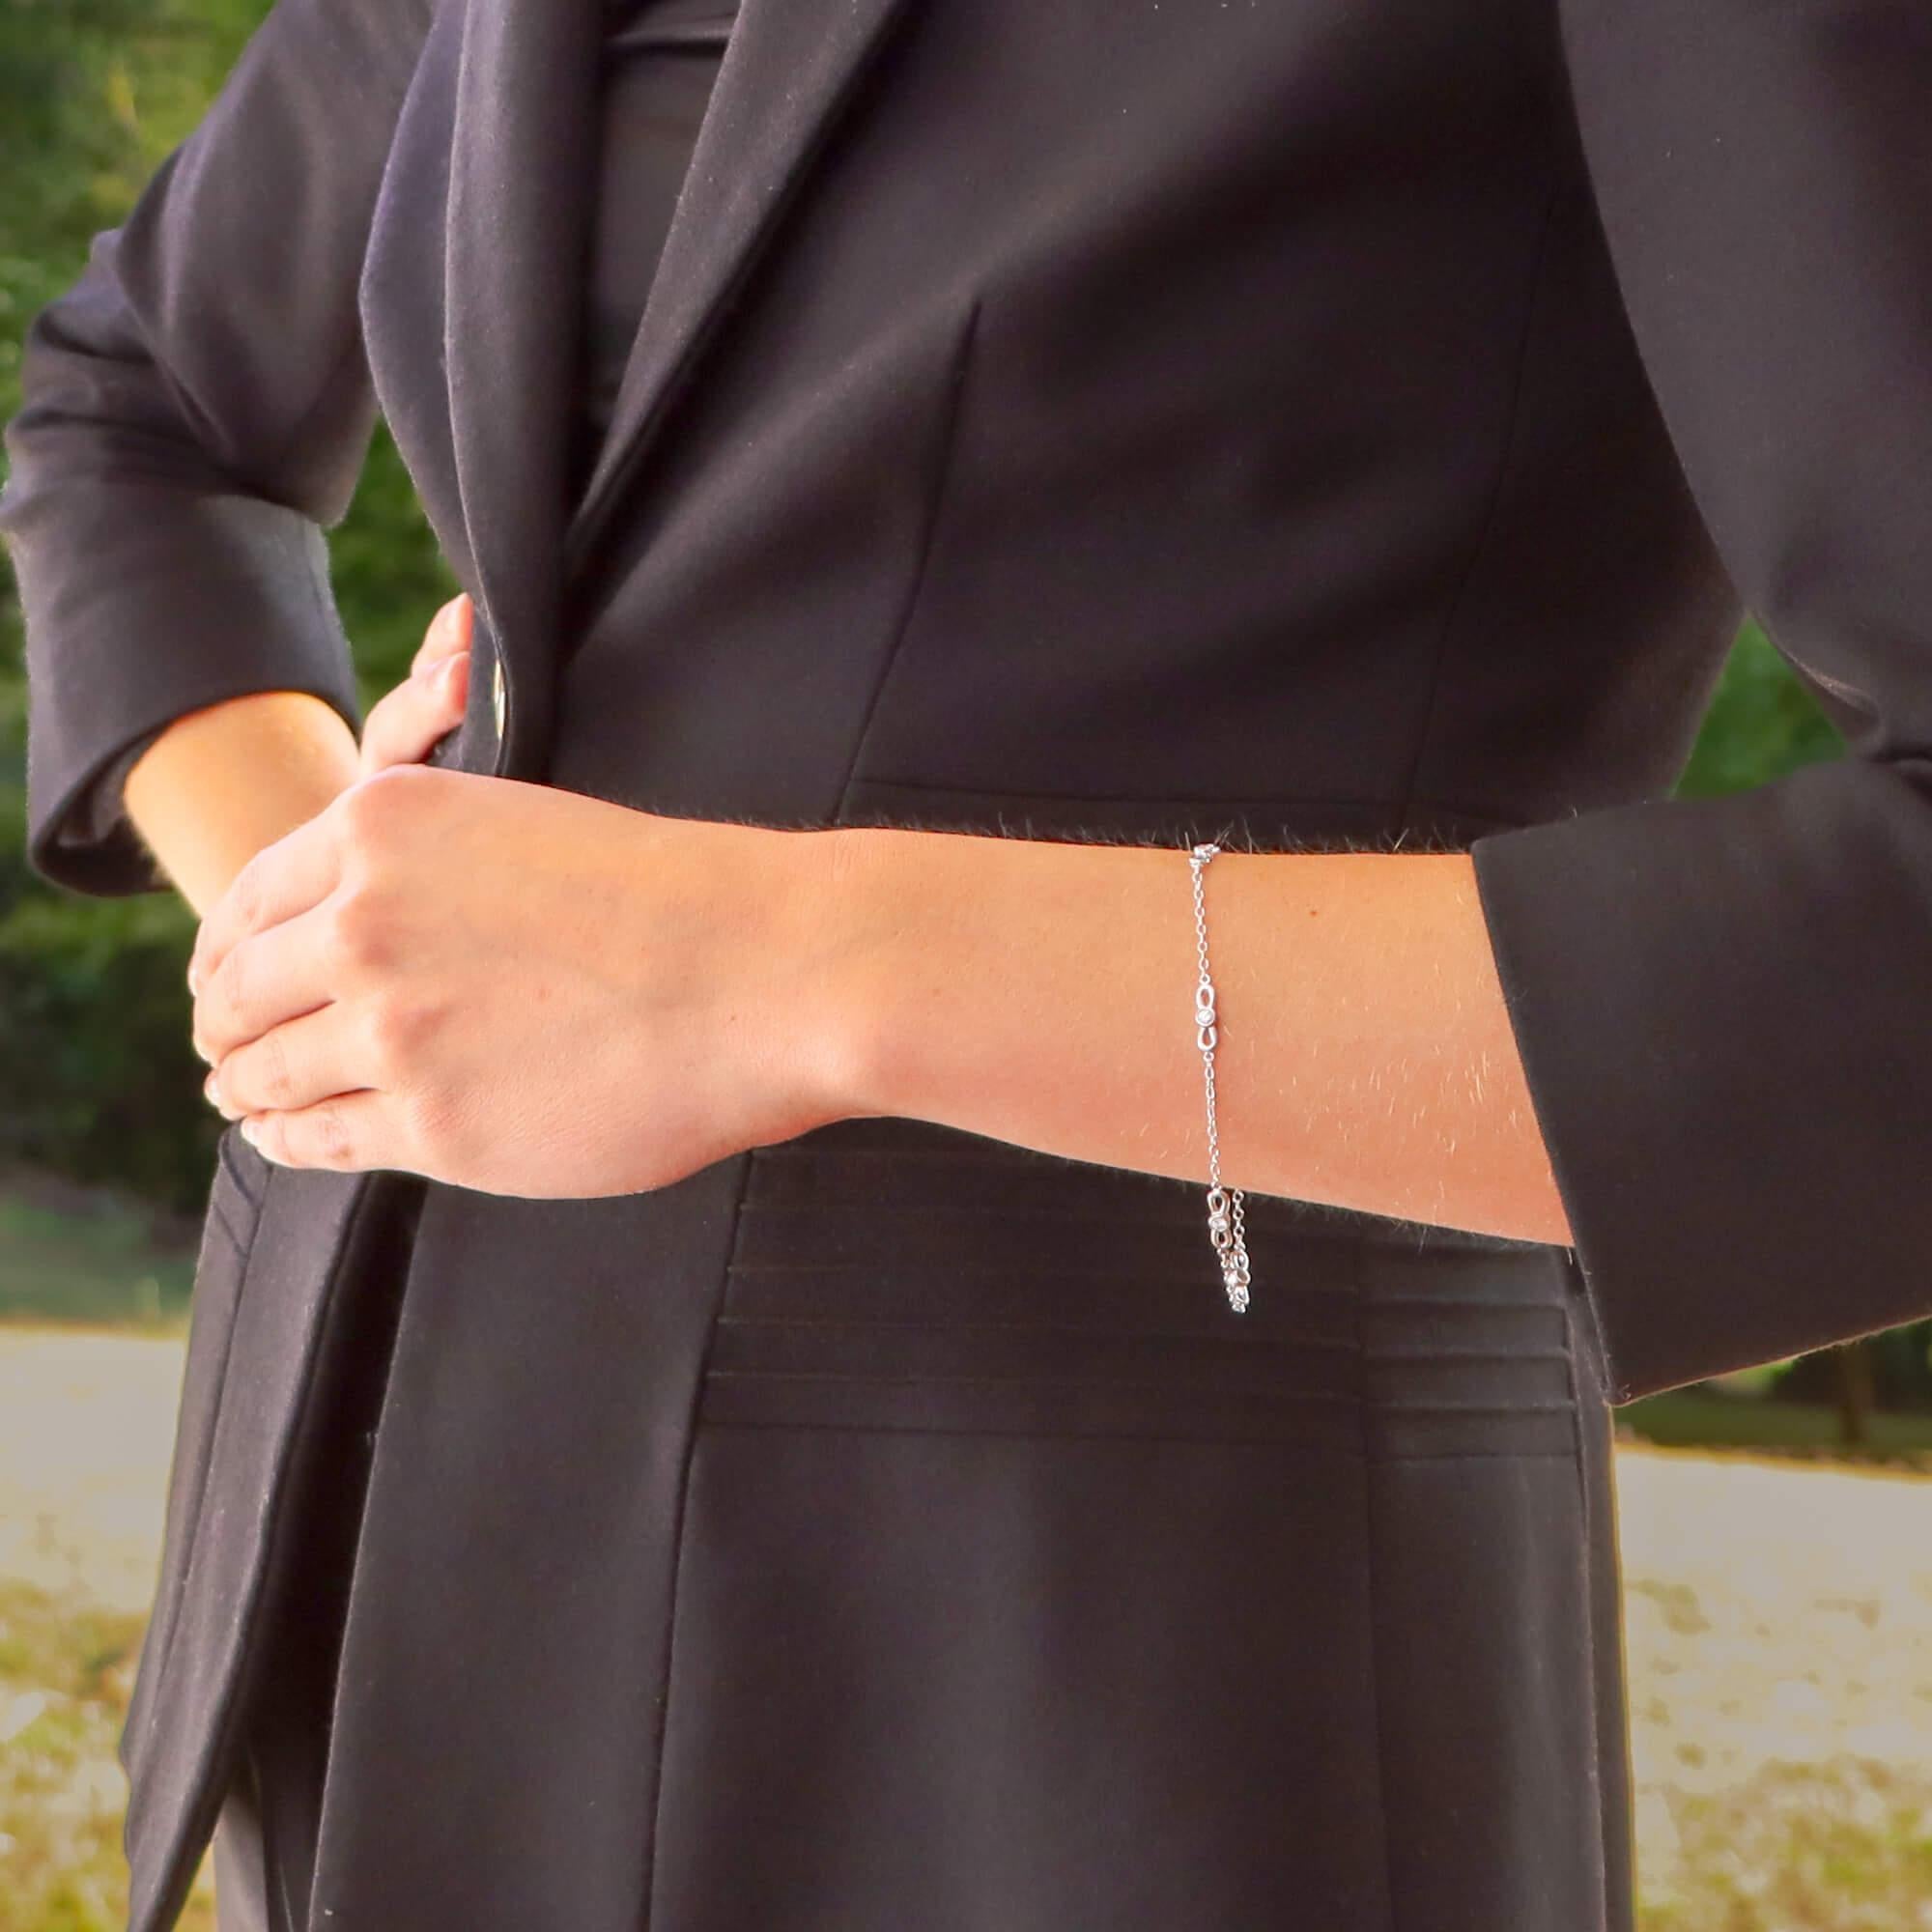 Un bracelet simple mais élégant en or blanc 18 carats de Tiffany & Co. avec des diamants en forme de nœud papillon.

Le bracelet est composé de cinq motifs de nœuds papillon, chacun étant serti au centre d'un diamant rond de taille brillant